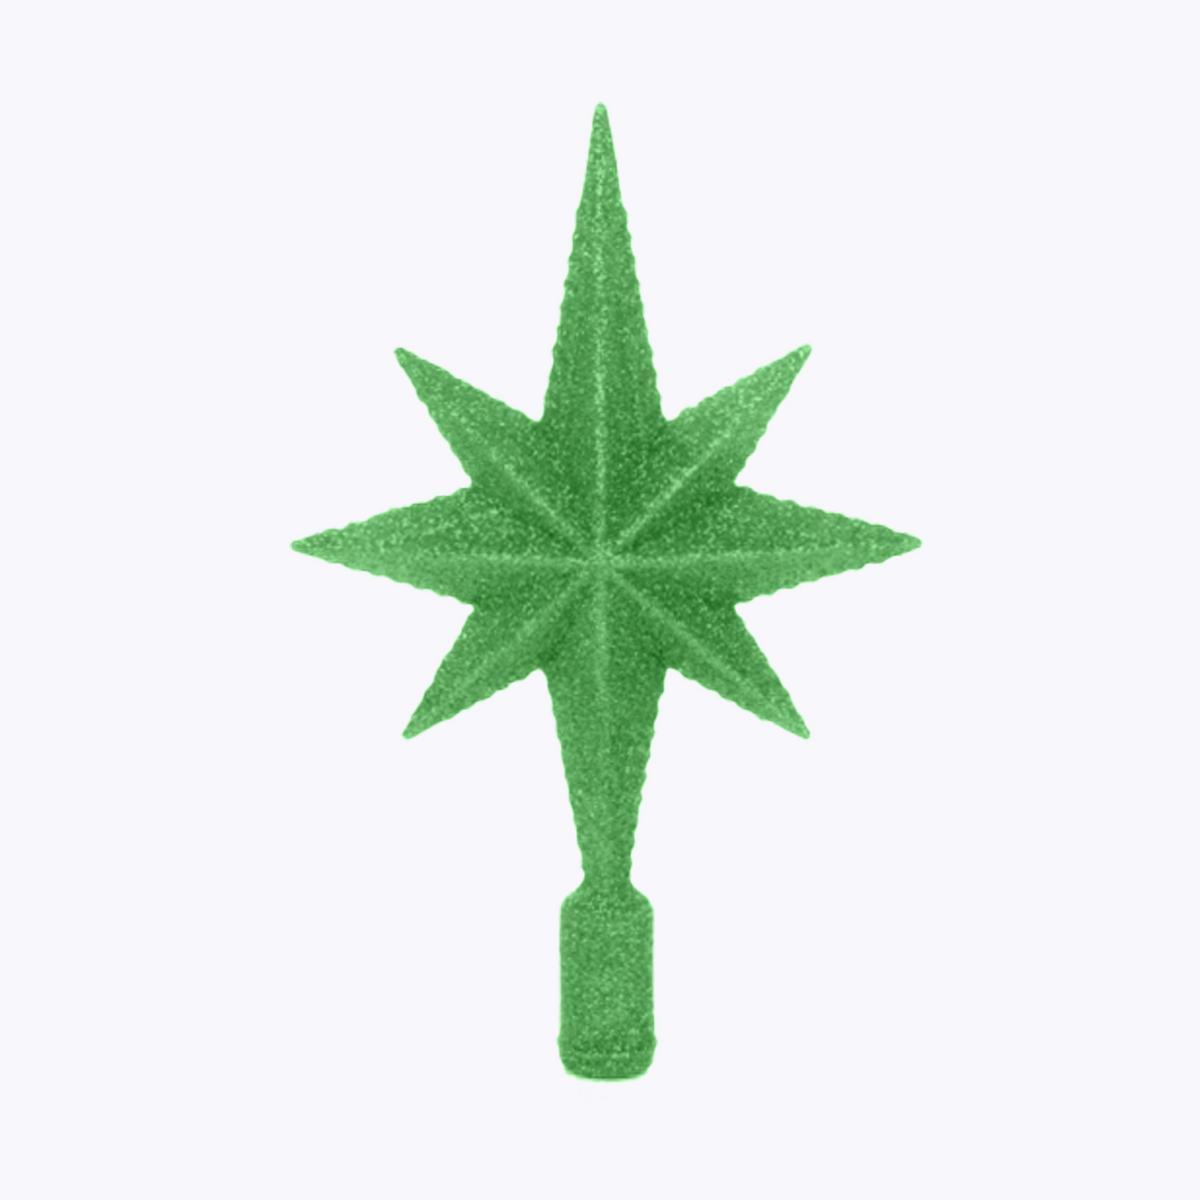 Cimier étoile polaire - Hauteur 20 cm - Vert émeraude